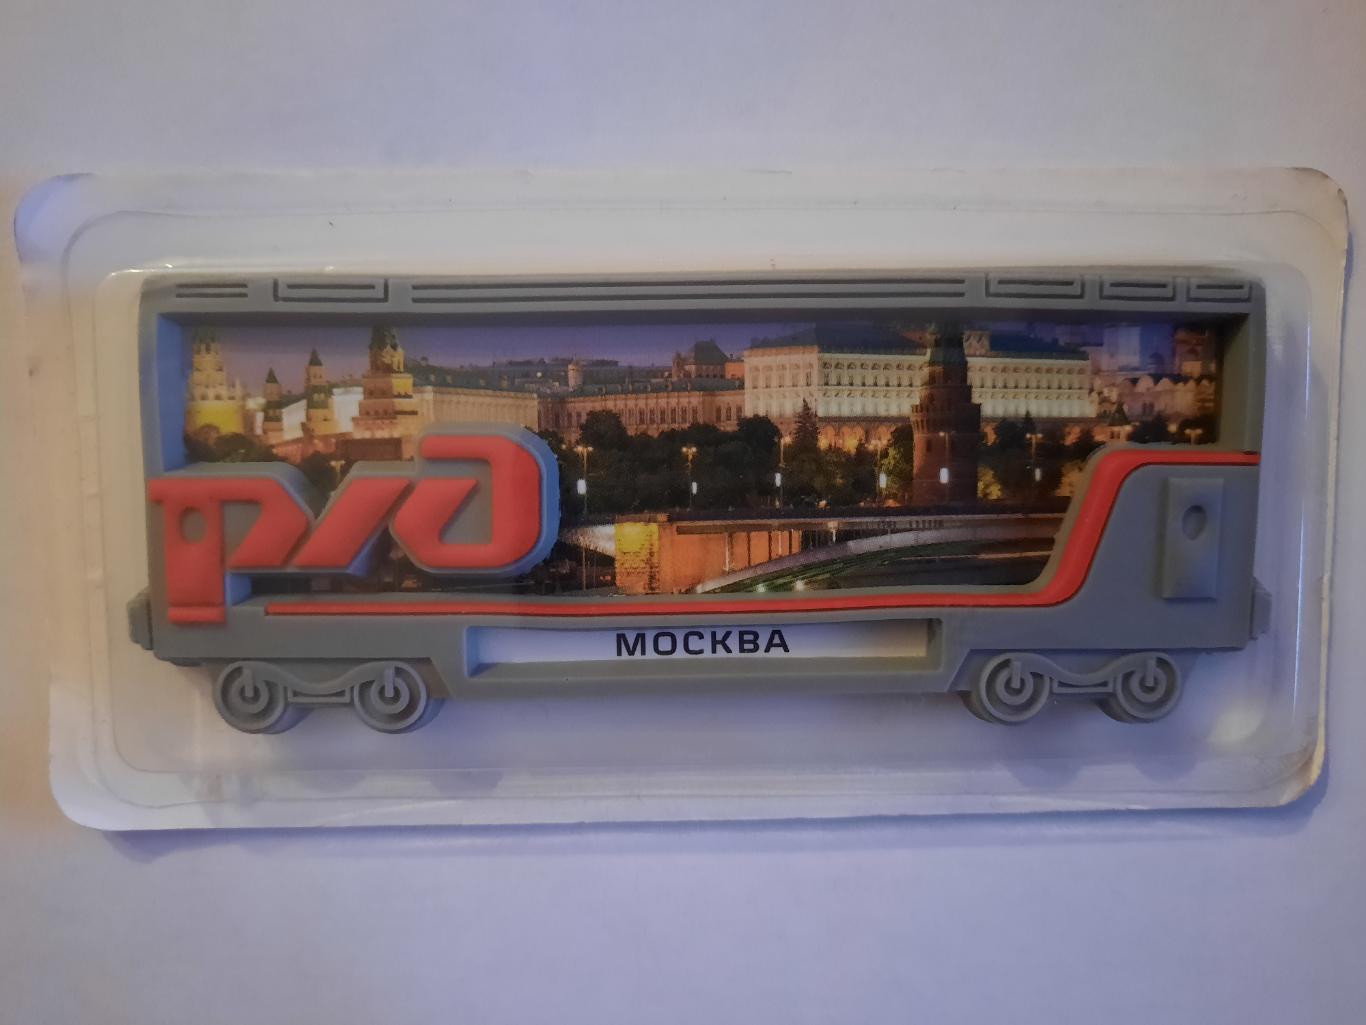 Официальный магнит РЖД - вагон Москва (новый, не открывался)